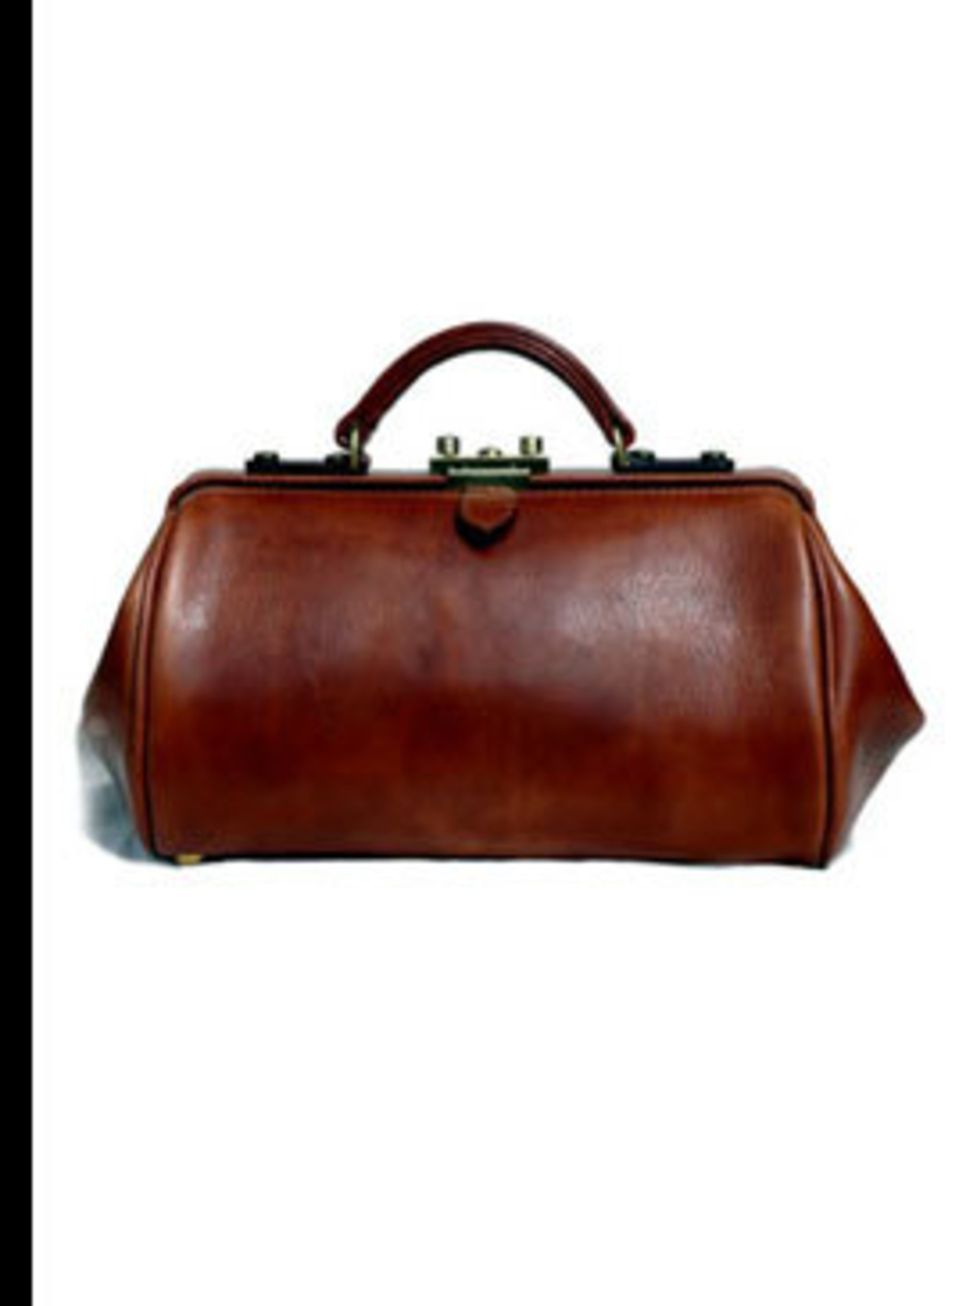 <p>Gladstone bag, £320, by <a href="http://www.mackenzieleather.co.uk/index.htm">Alan Mackenzie</a></p>